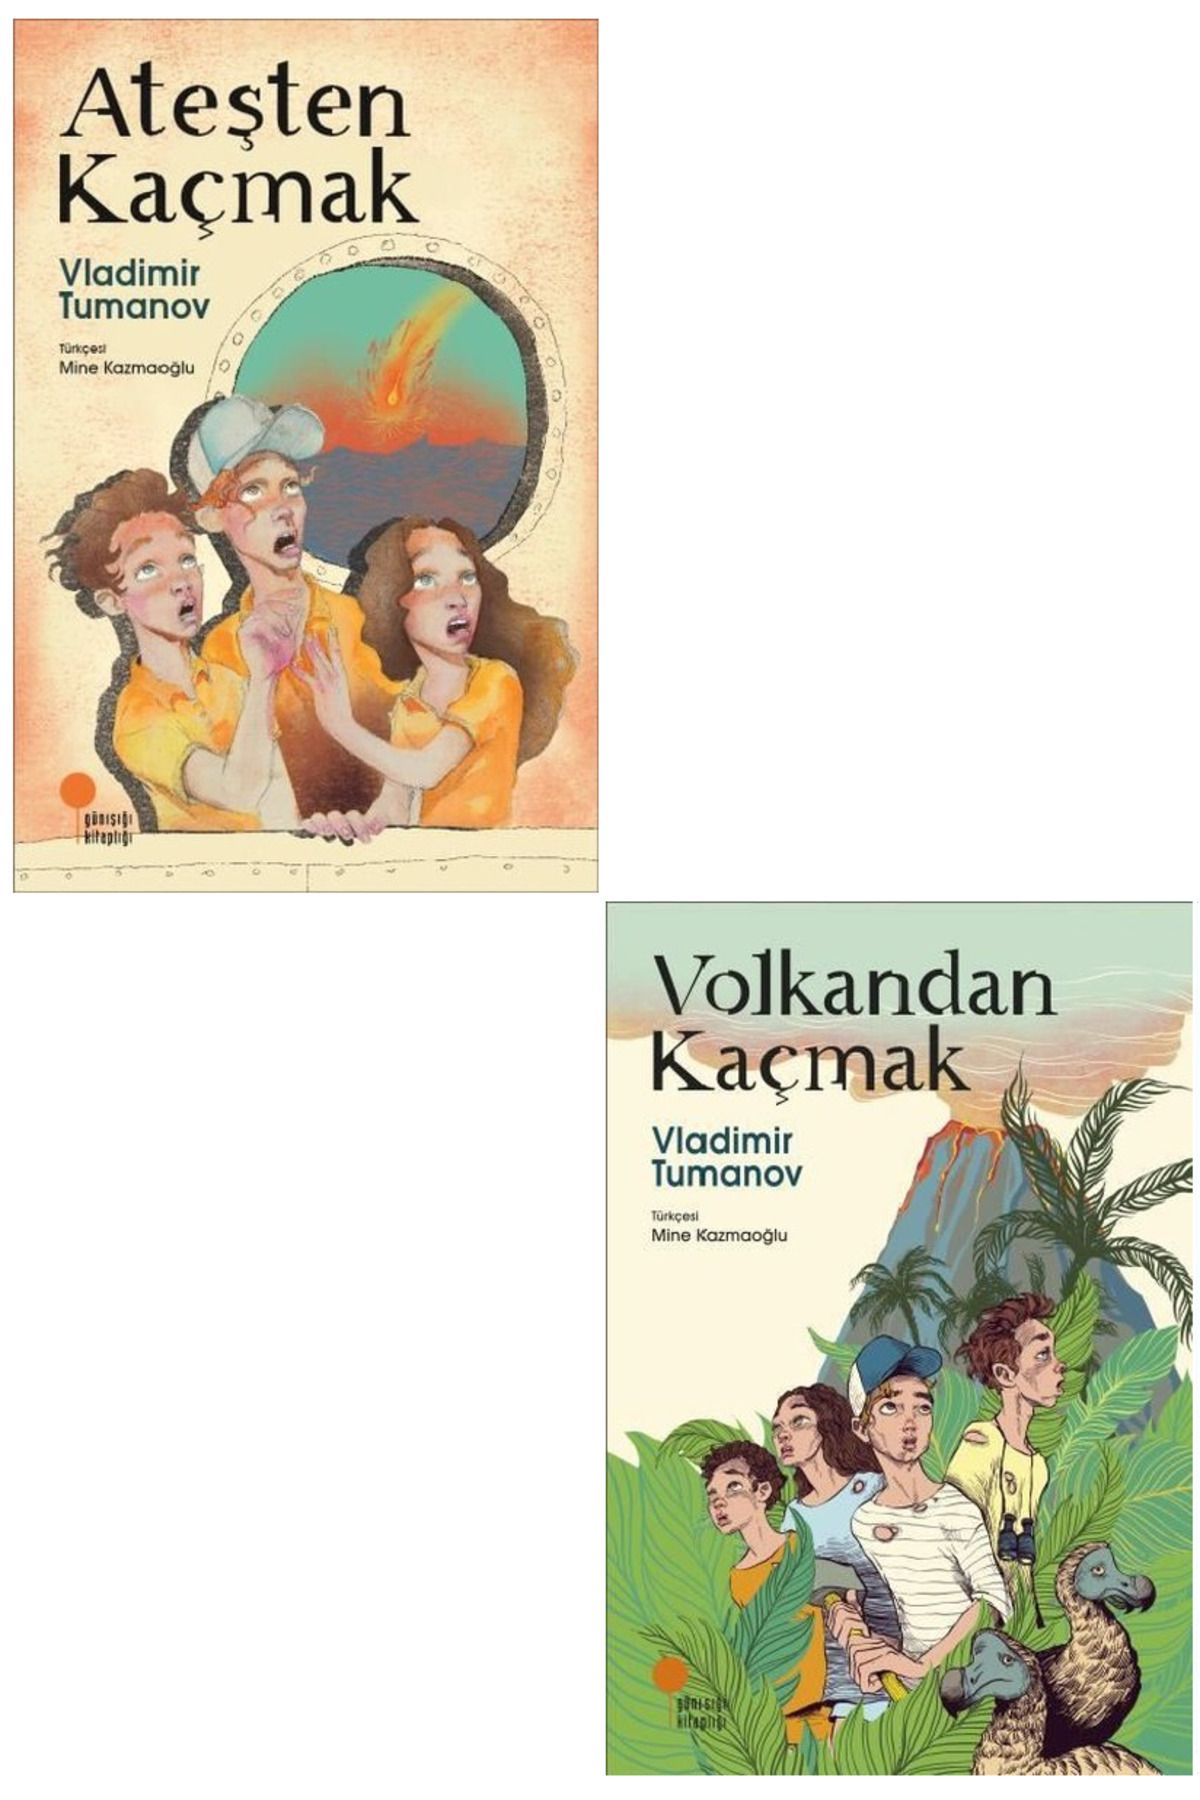 Günışığı Kitaplığı Vladimir Tumanov 2 Kitap Set / Ateşten Kaçmak + Volkandan Kaçmak